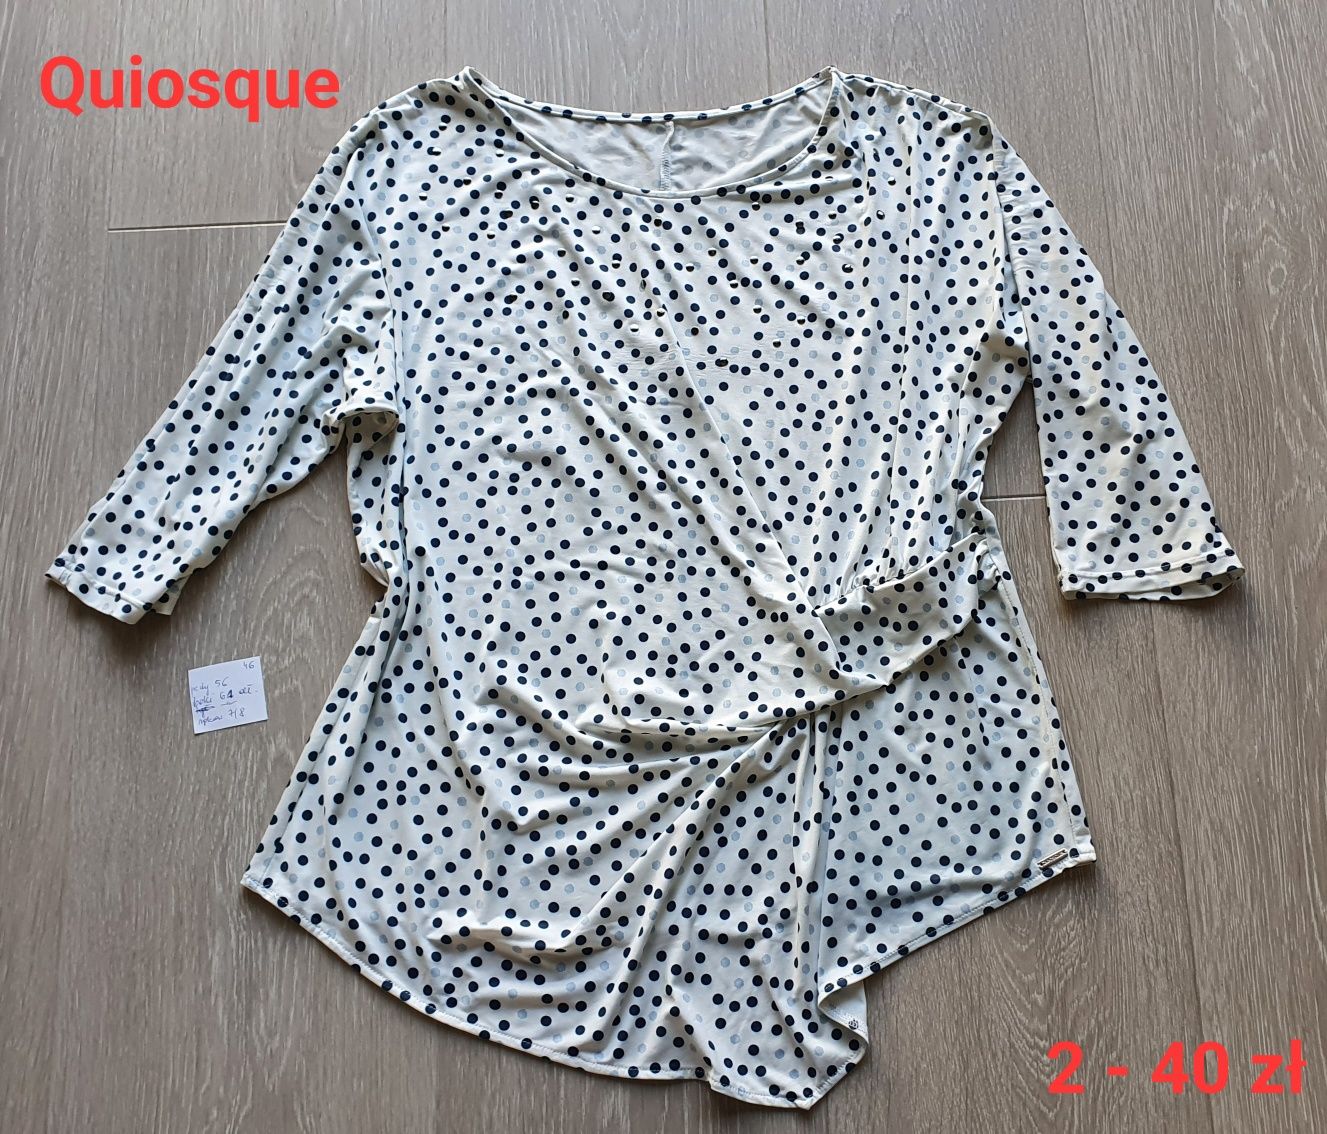 Bluzki, sukienki quiosque beata Collection bon prix 46